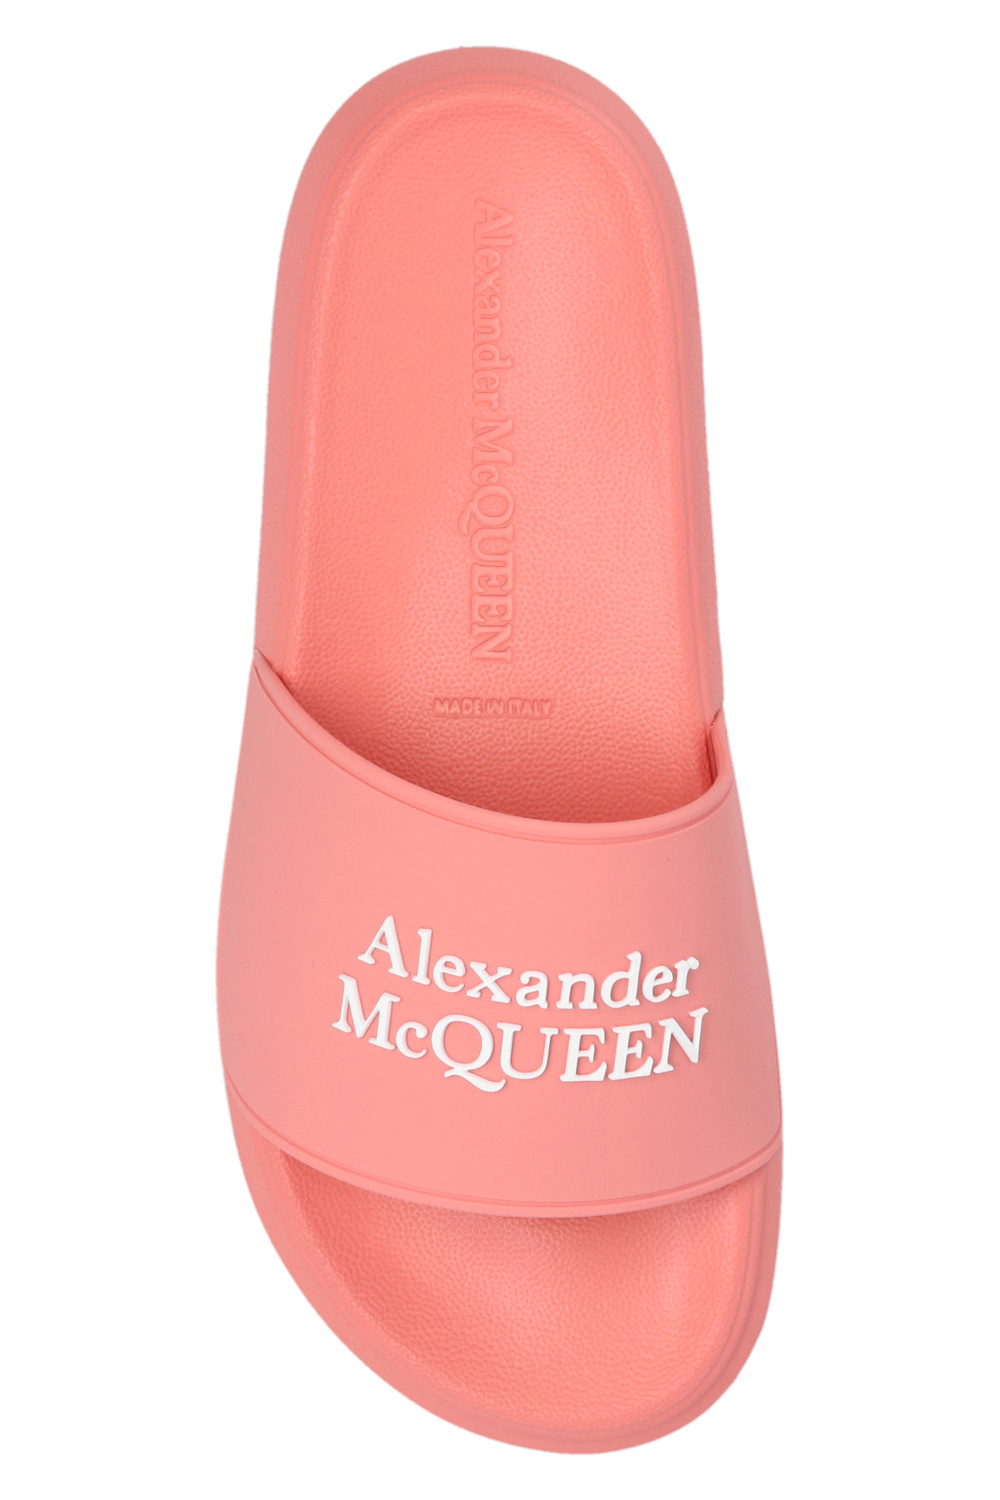 Alexander McQueen Alexander McQueen Skull Print Logo Tee